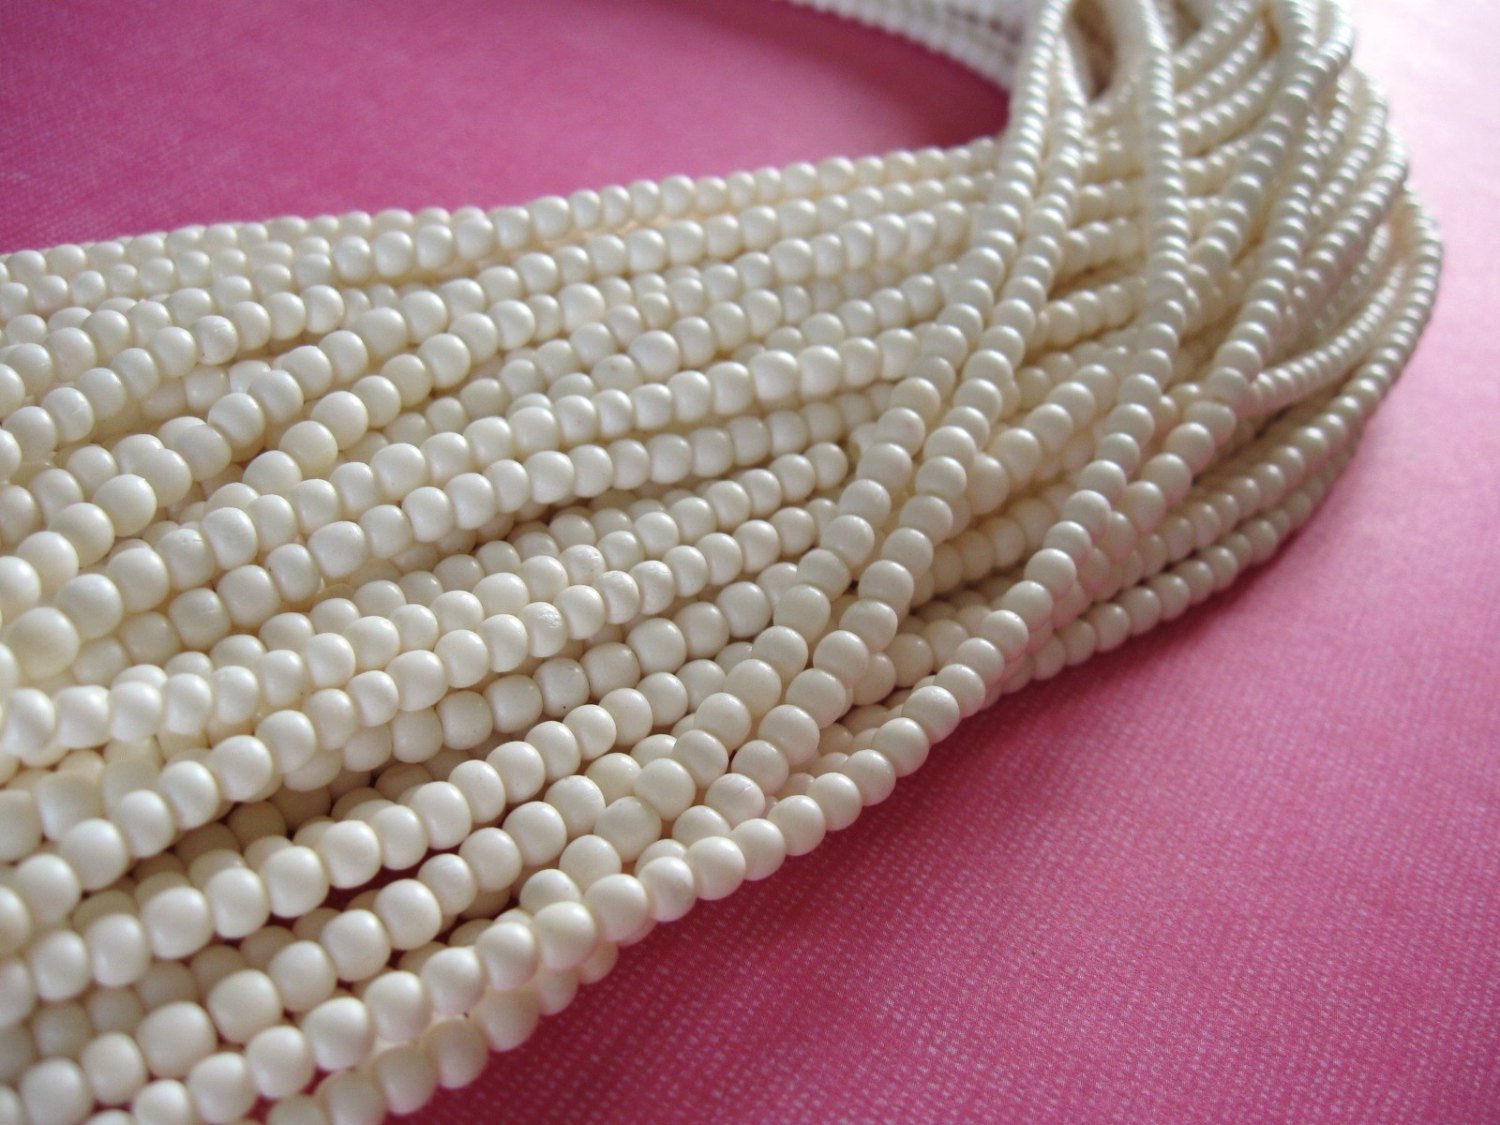 White bone beads, 100 bone round beads 3-4mm, eco friendly and natural bone beads